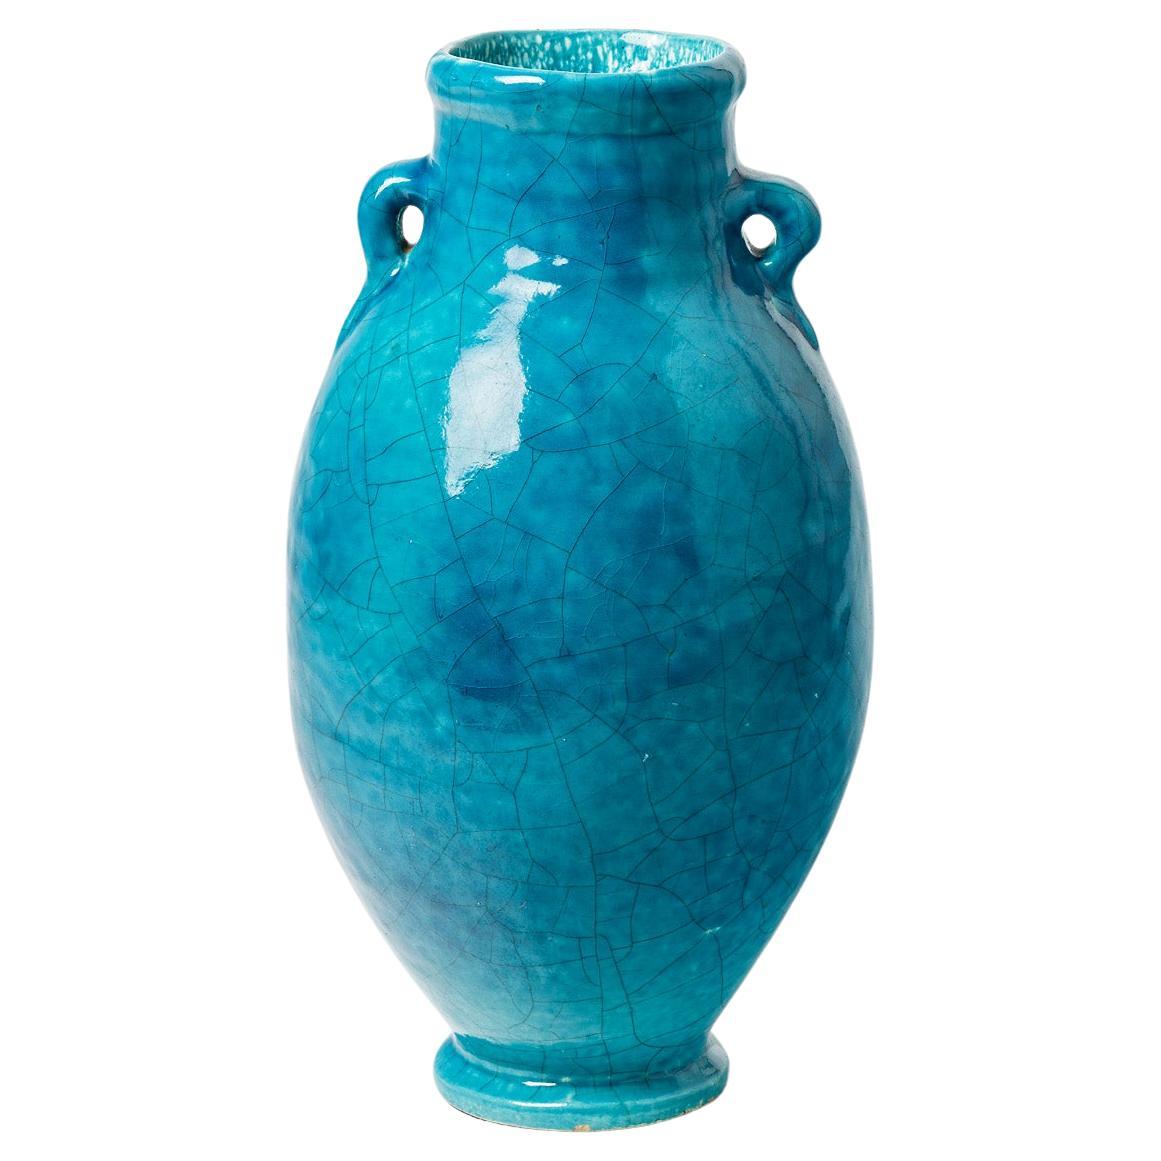 Jarrón de cerámica vidriada azul atribuido a Raoul Lachenal, hacia 1930. en venta